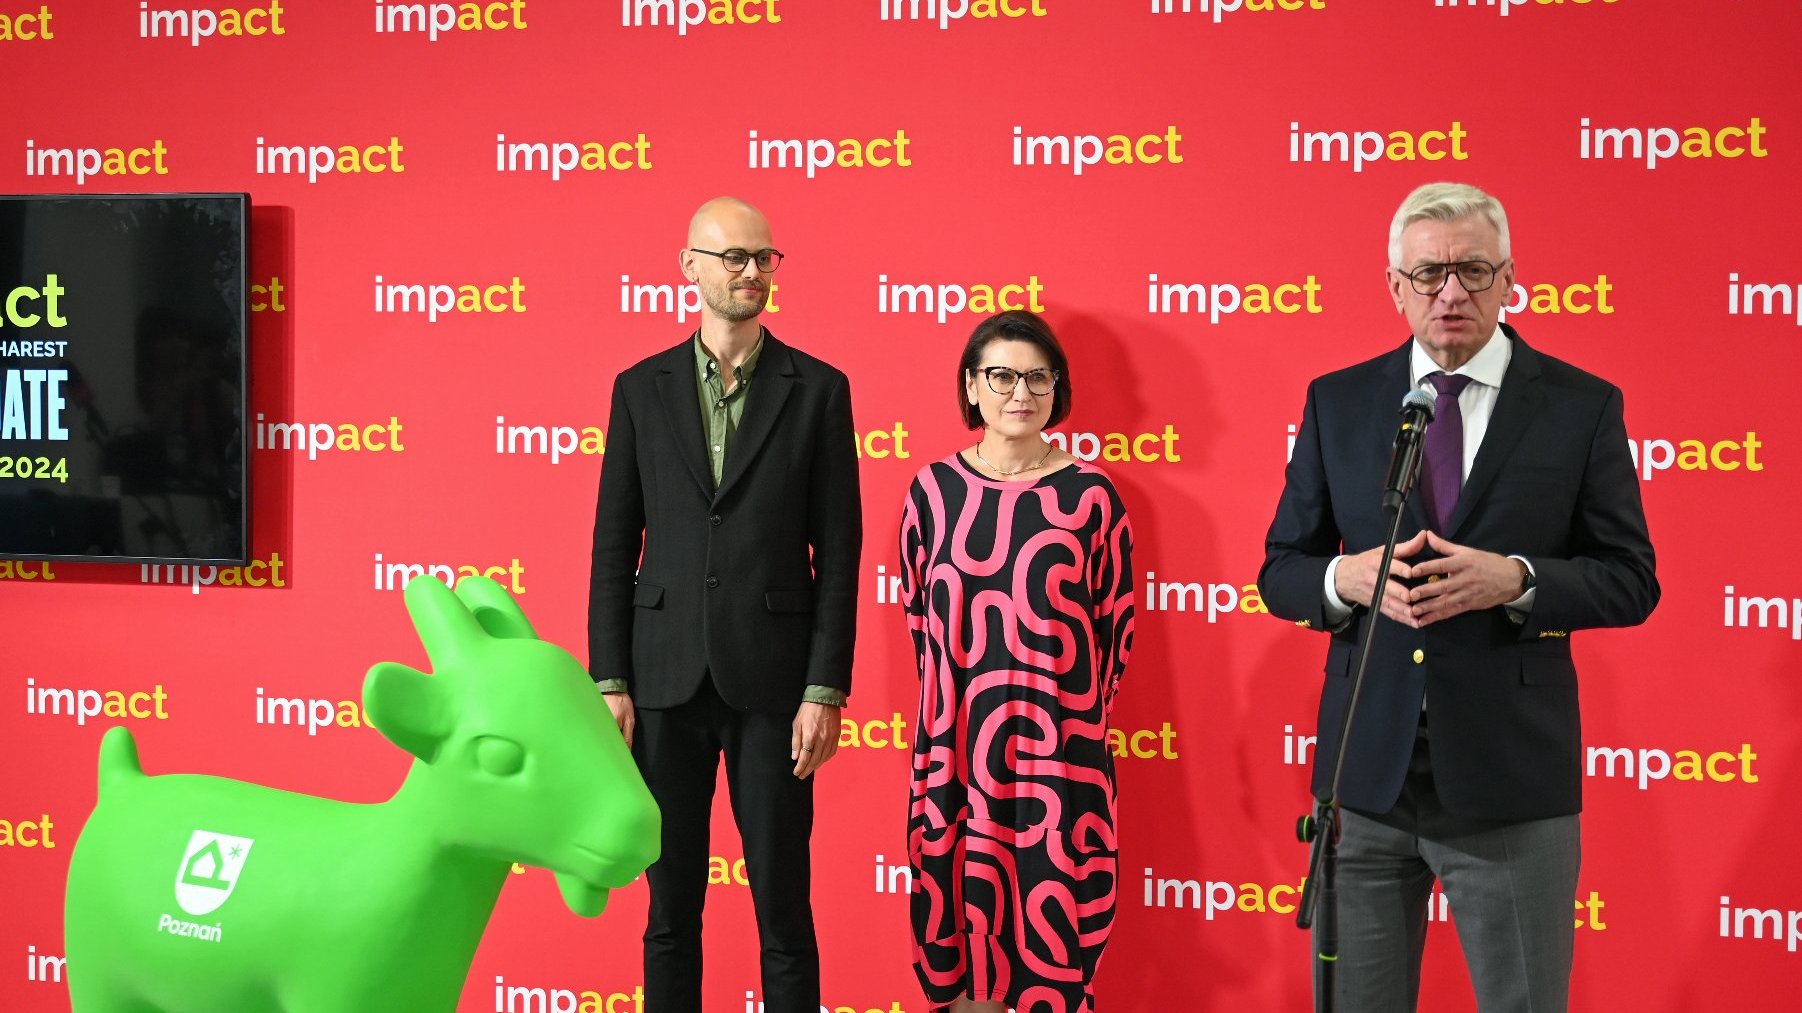 Prezydent Jacek Jaśkowiak przemawia podczas międzynarodowego kongresu "Impact'24". Obok niego stoją dwie osoby: kobieta i mężczyzna. Na dole po lewej stronie zielona figura koziołka z nowym logo.